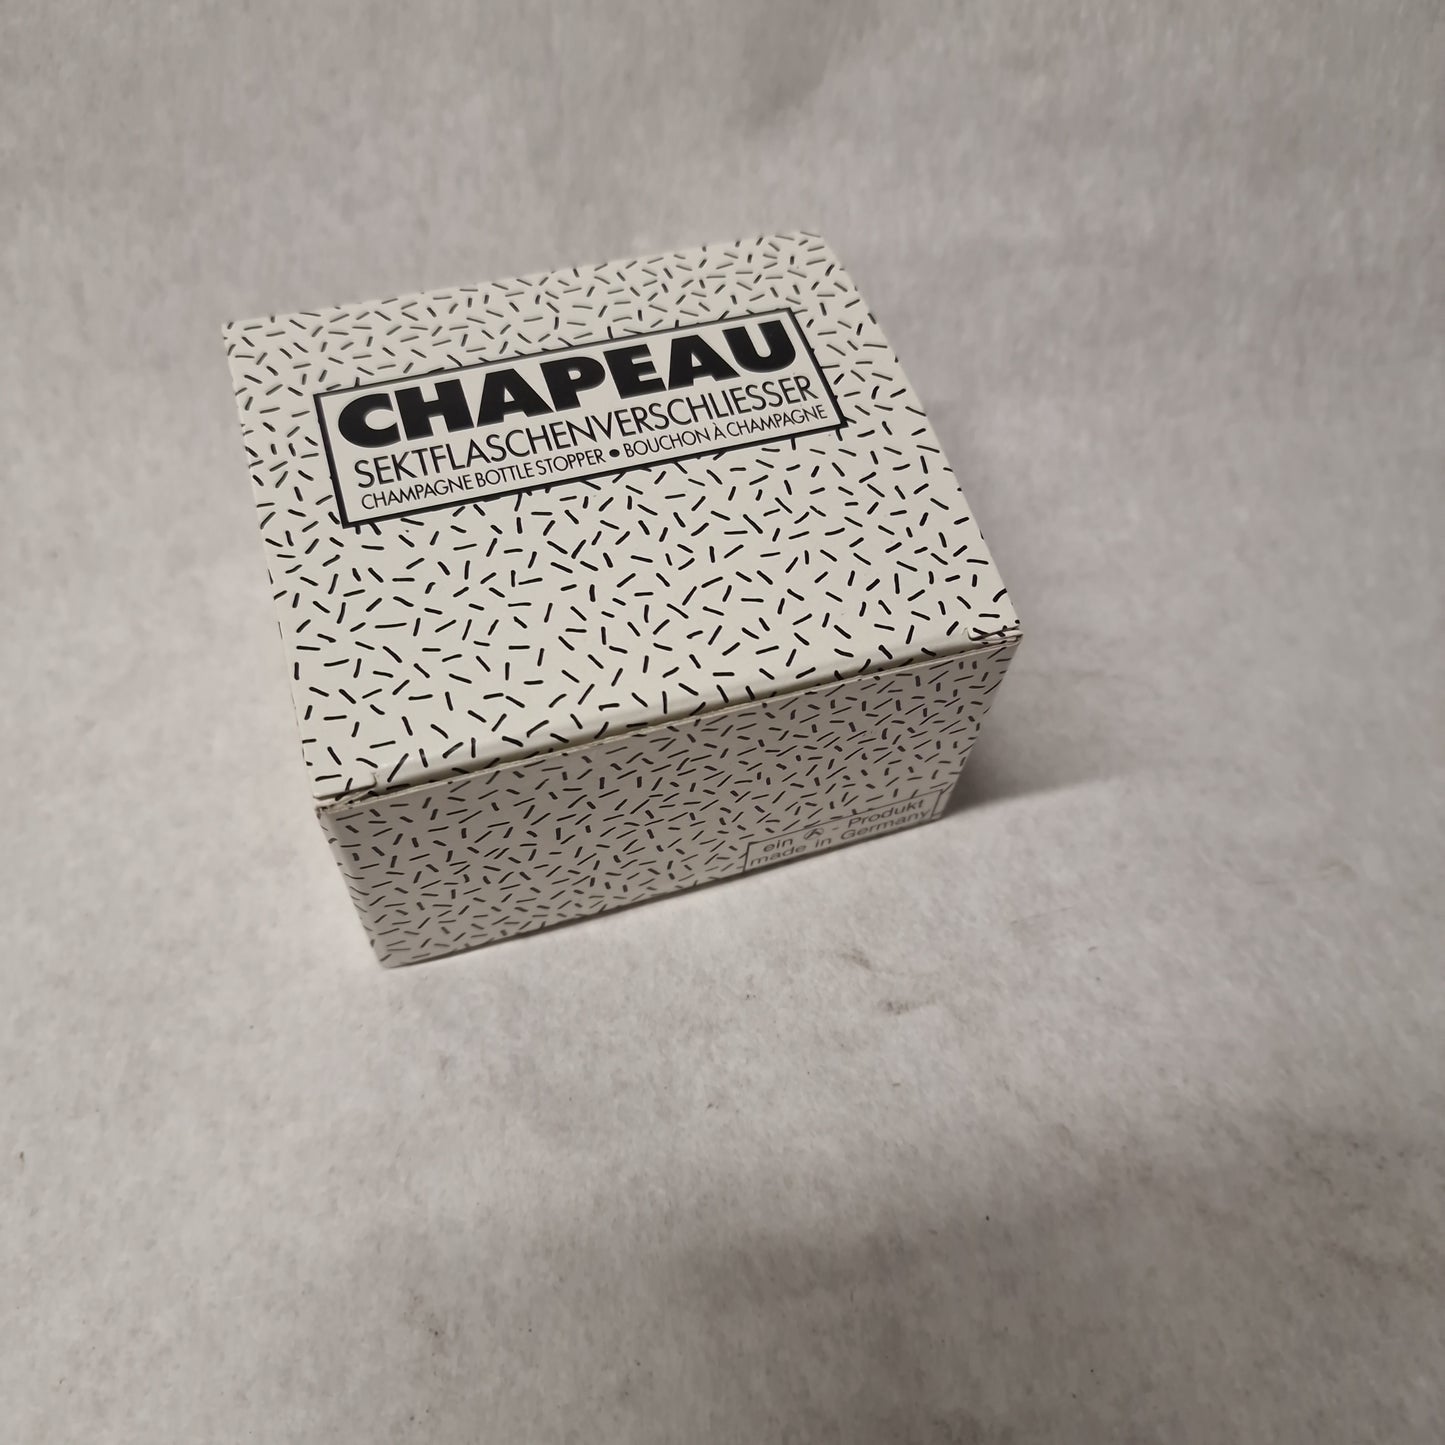 CHAPEAU Sektflaschenverschließer Champagner Verschließer, Patentiert, Zylinder-Form